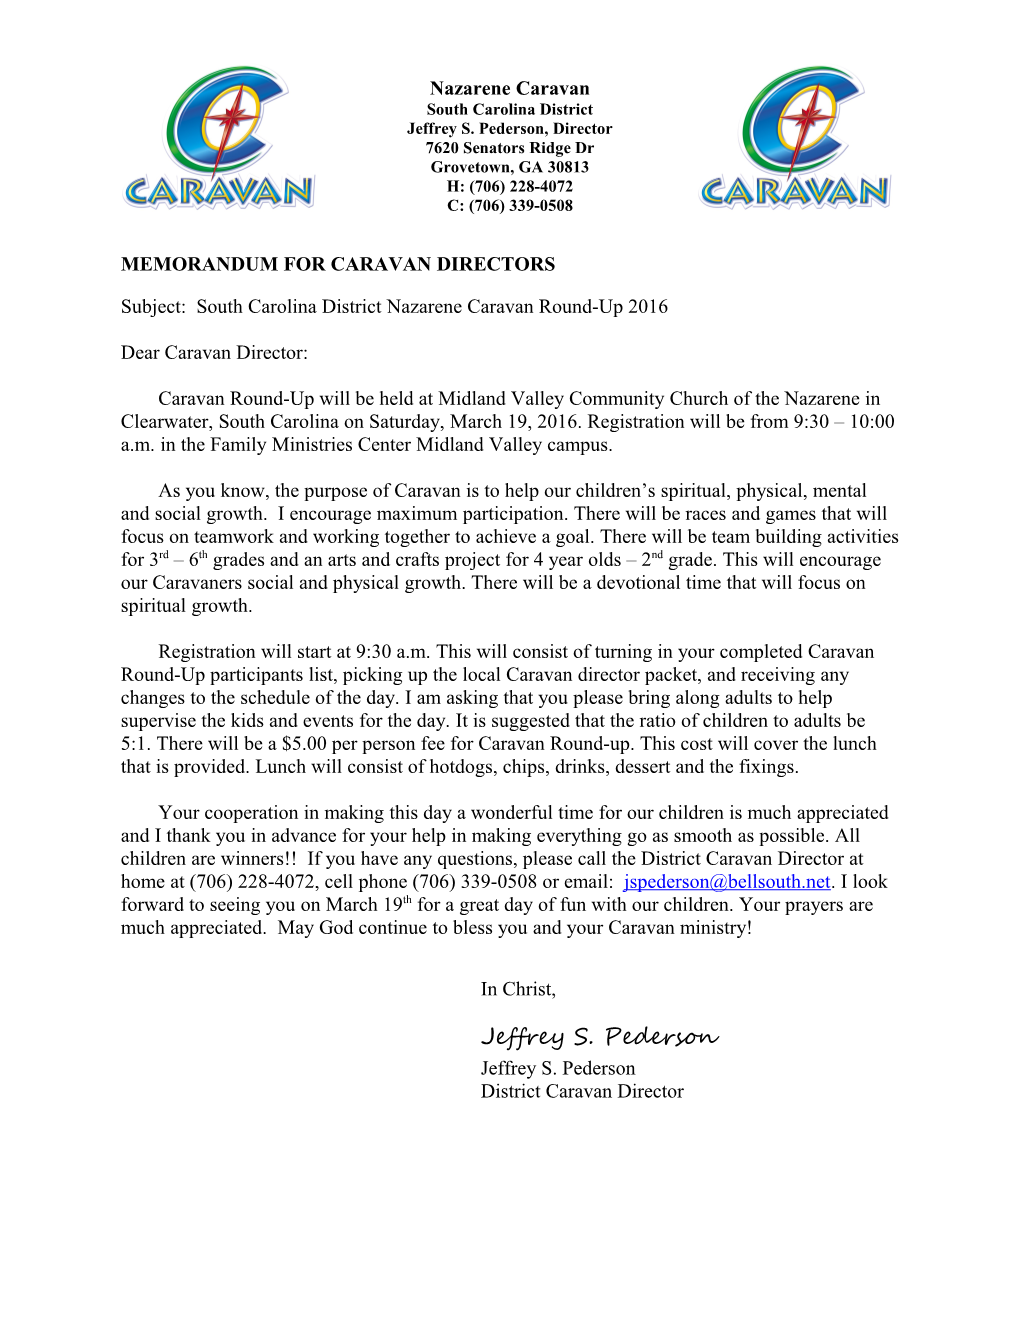 Memorandum for Caravan Directors